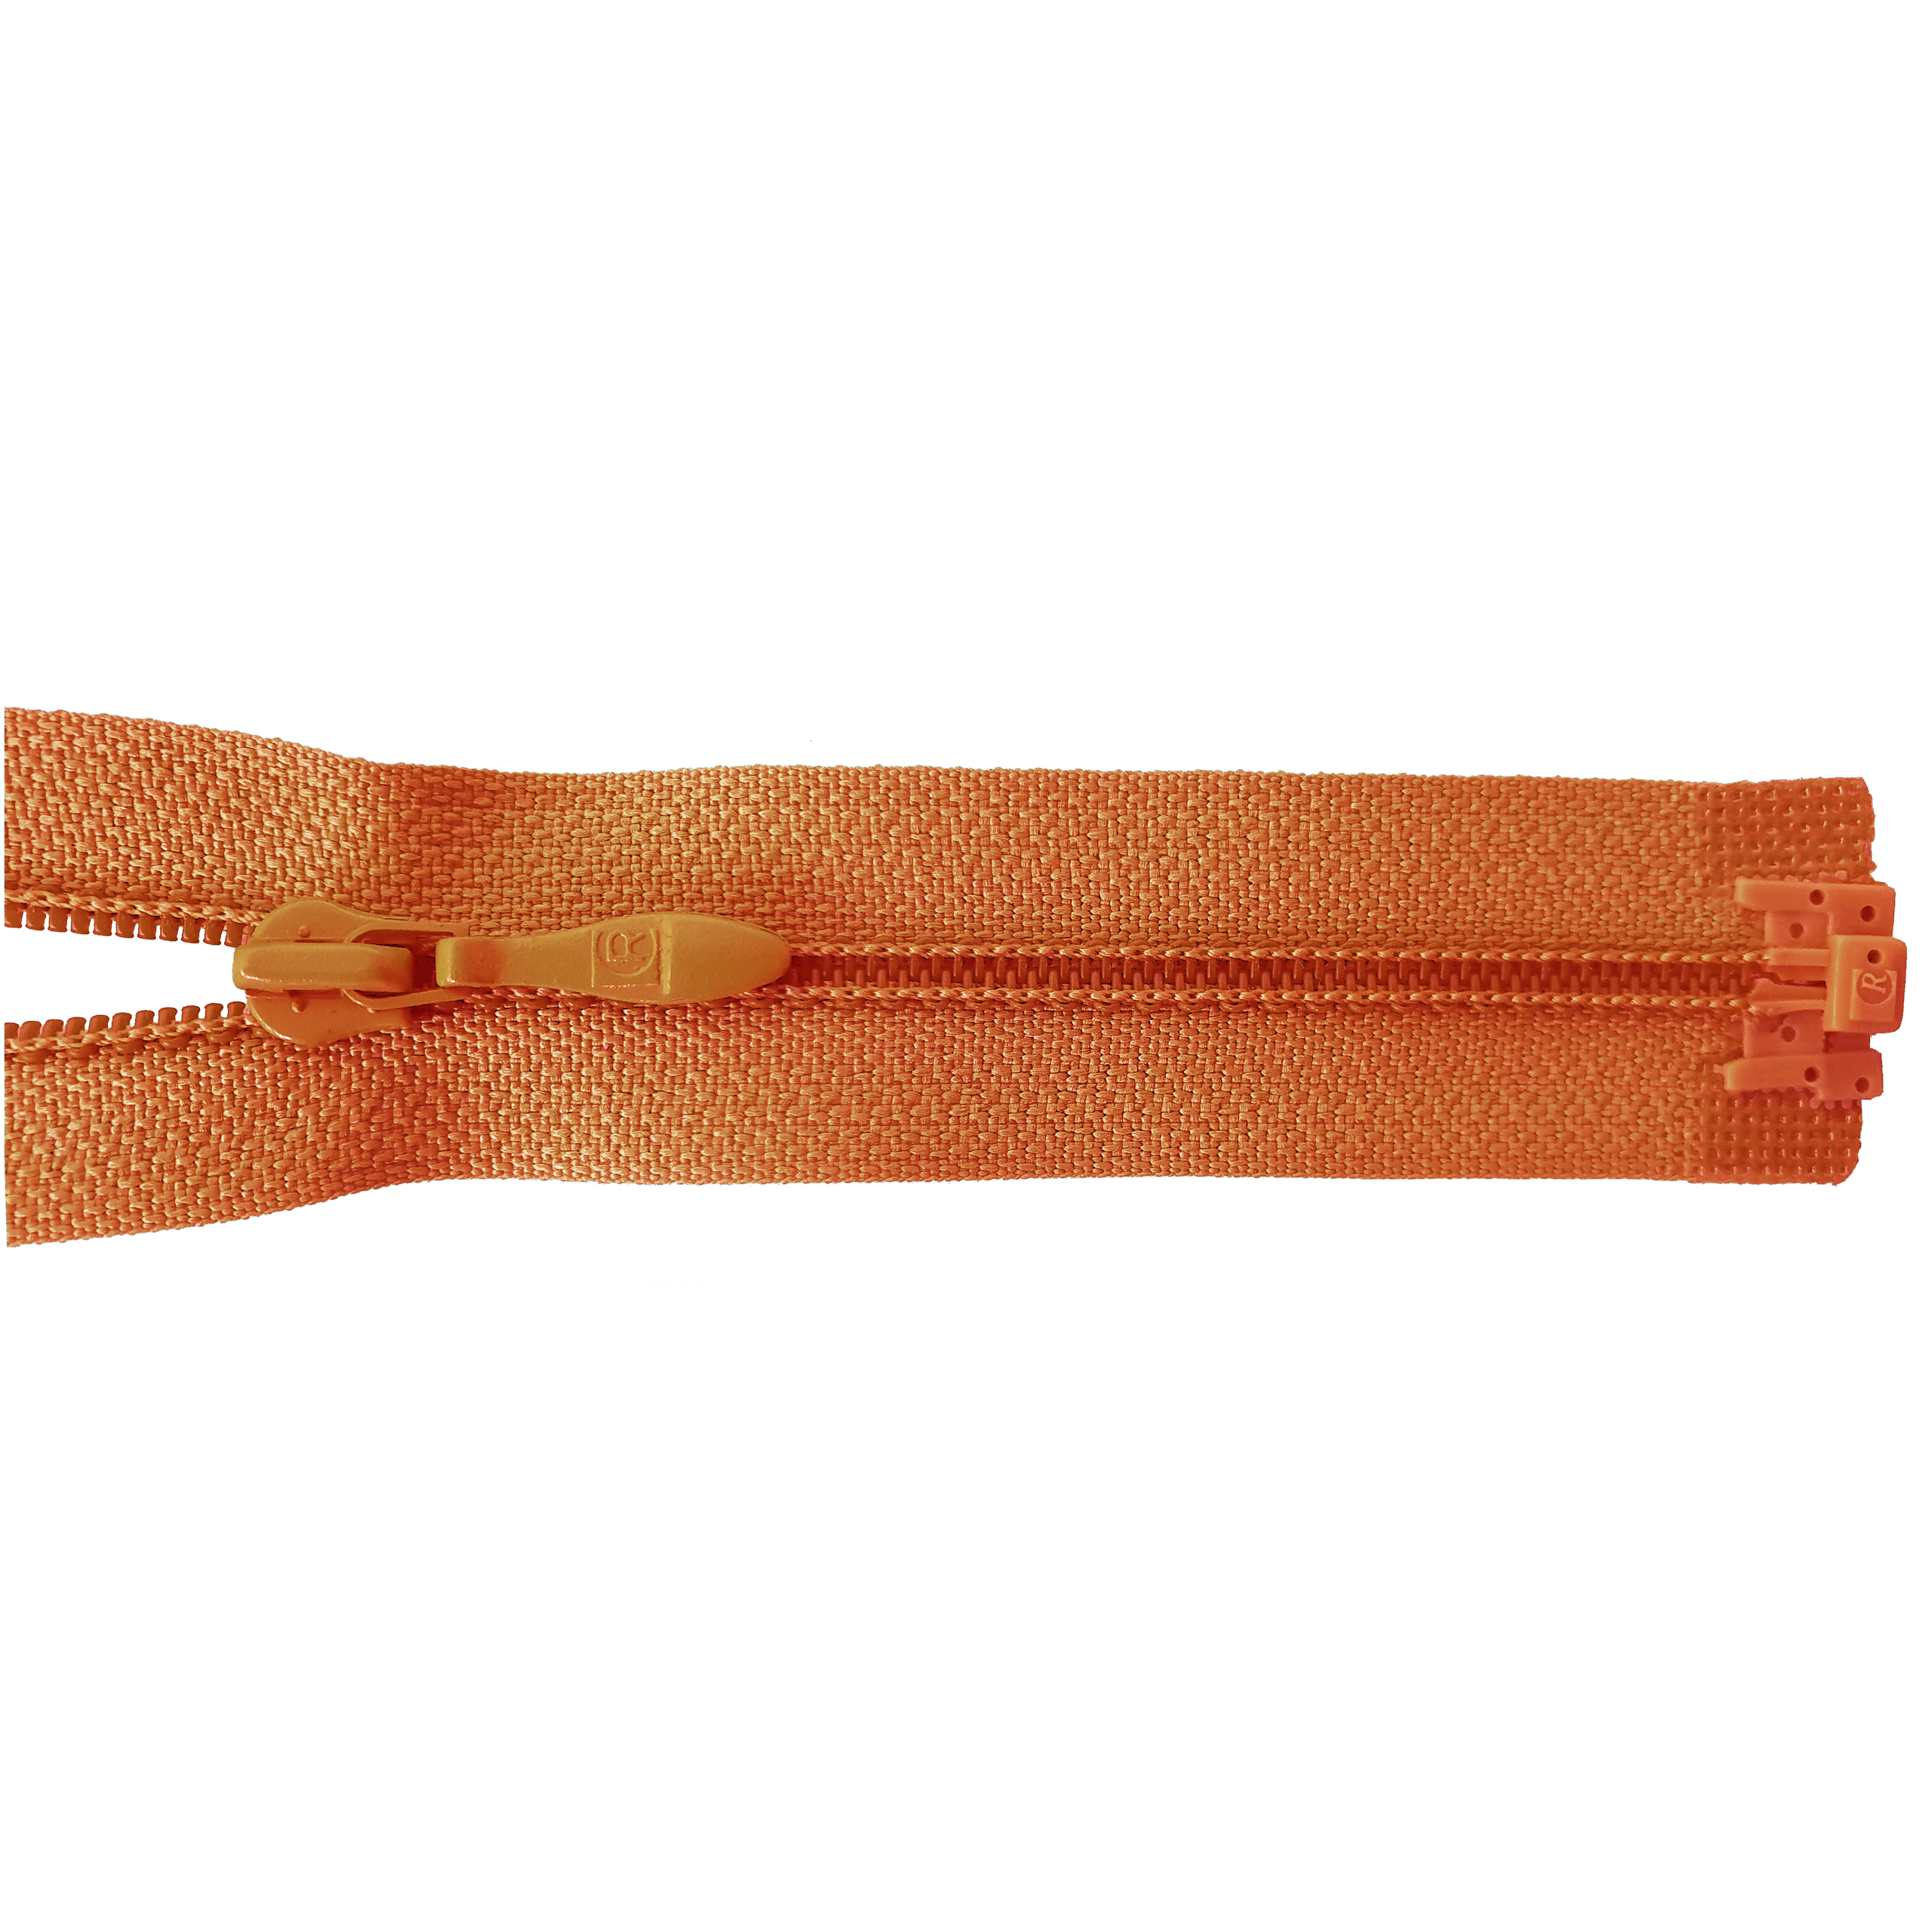 Reißverschluss 60cm, teilbar, PES-Spirale fein, bräunlich-orange, hochwertiger Marken-Reißverschluss von Rubi/Barcelona